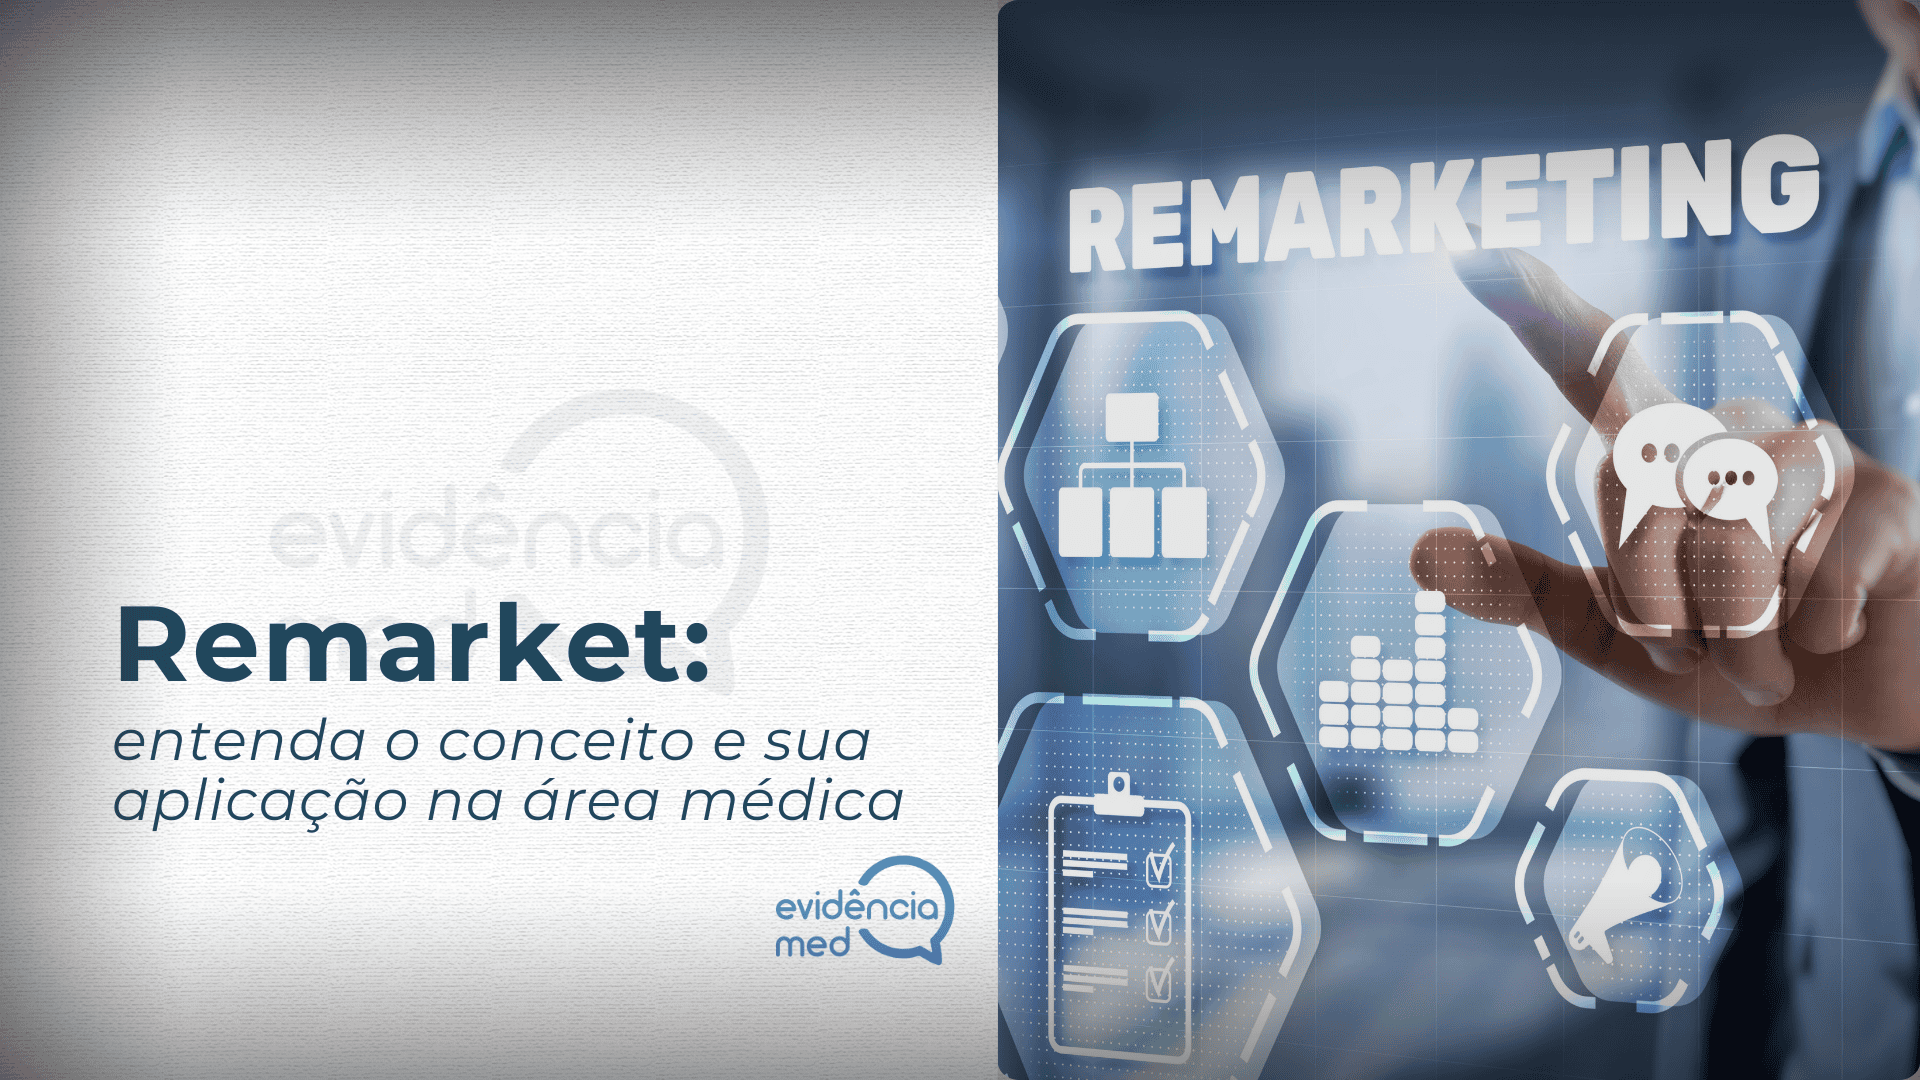 Remarket: entenda o conceito e sua aplicação na área médica